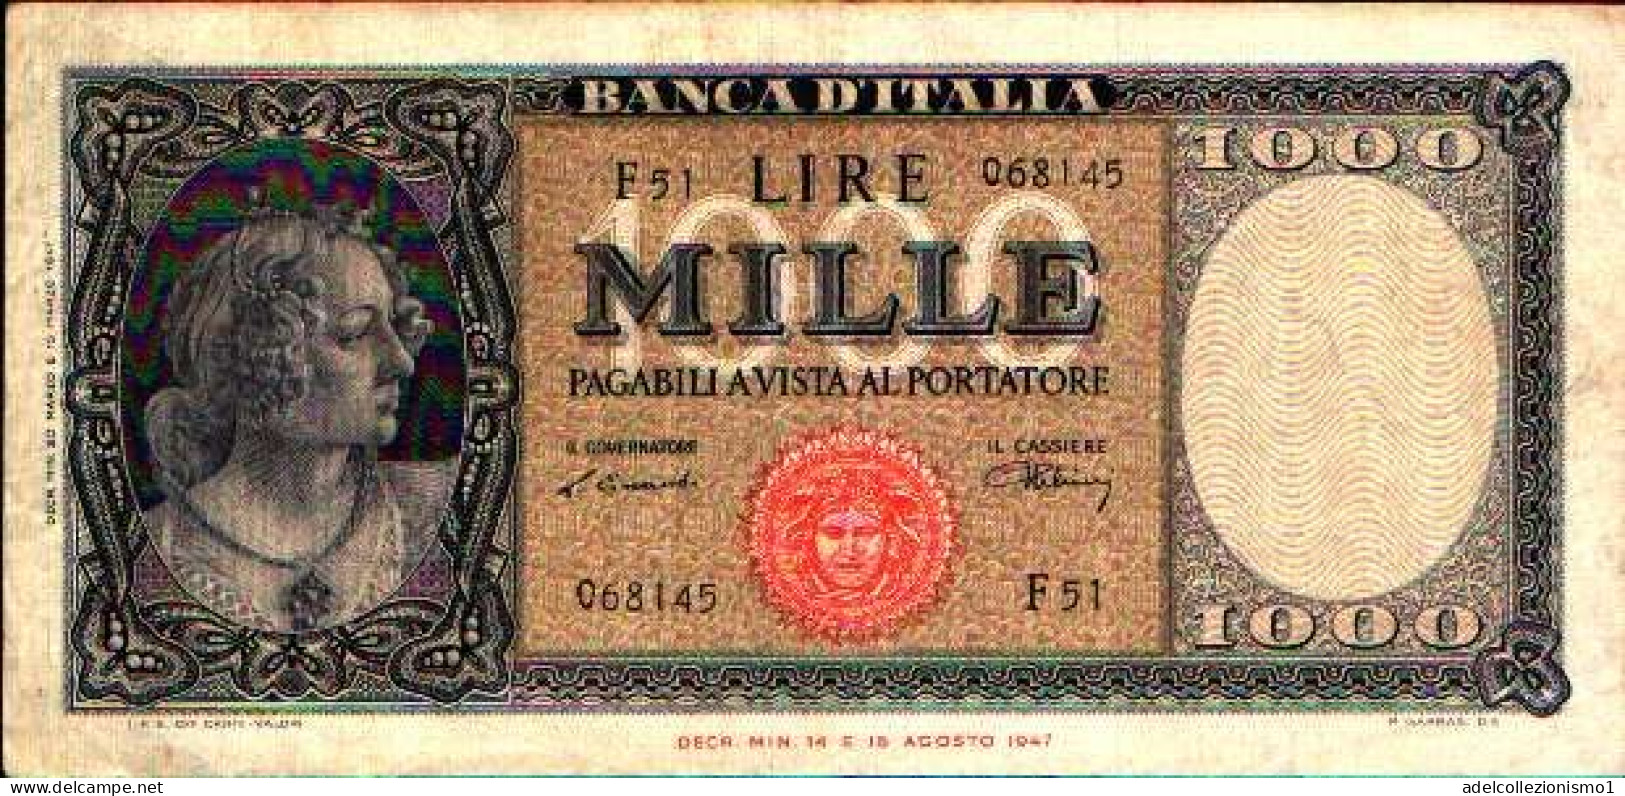 49442) 1000 LIRE ITALIA ORNATA DI PERLE MEDUSA 20/03/1947 QUASI SPL - 1000 Lire